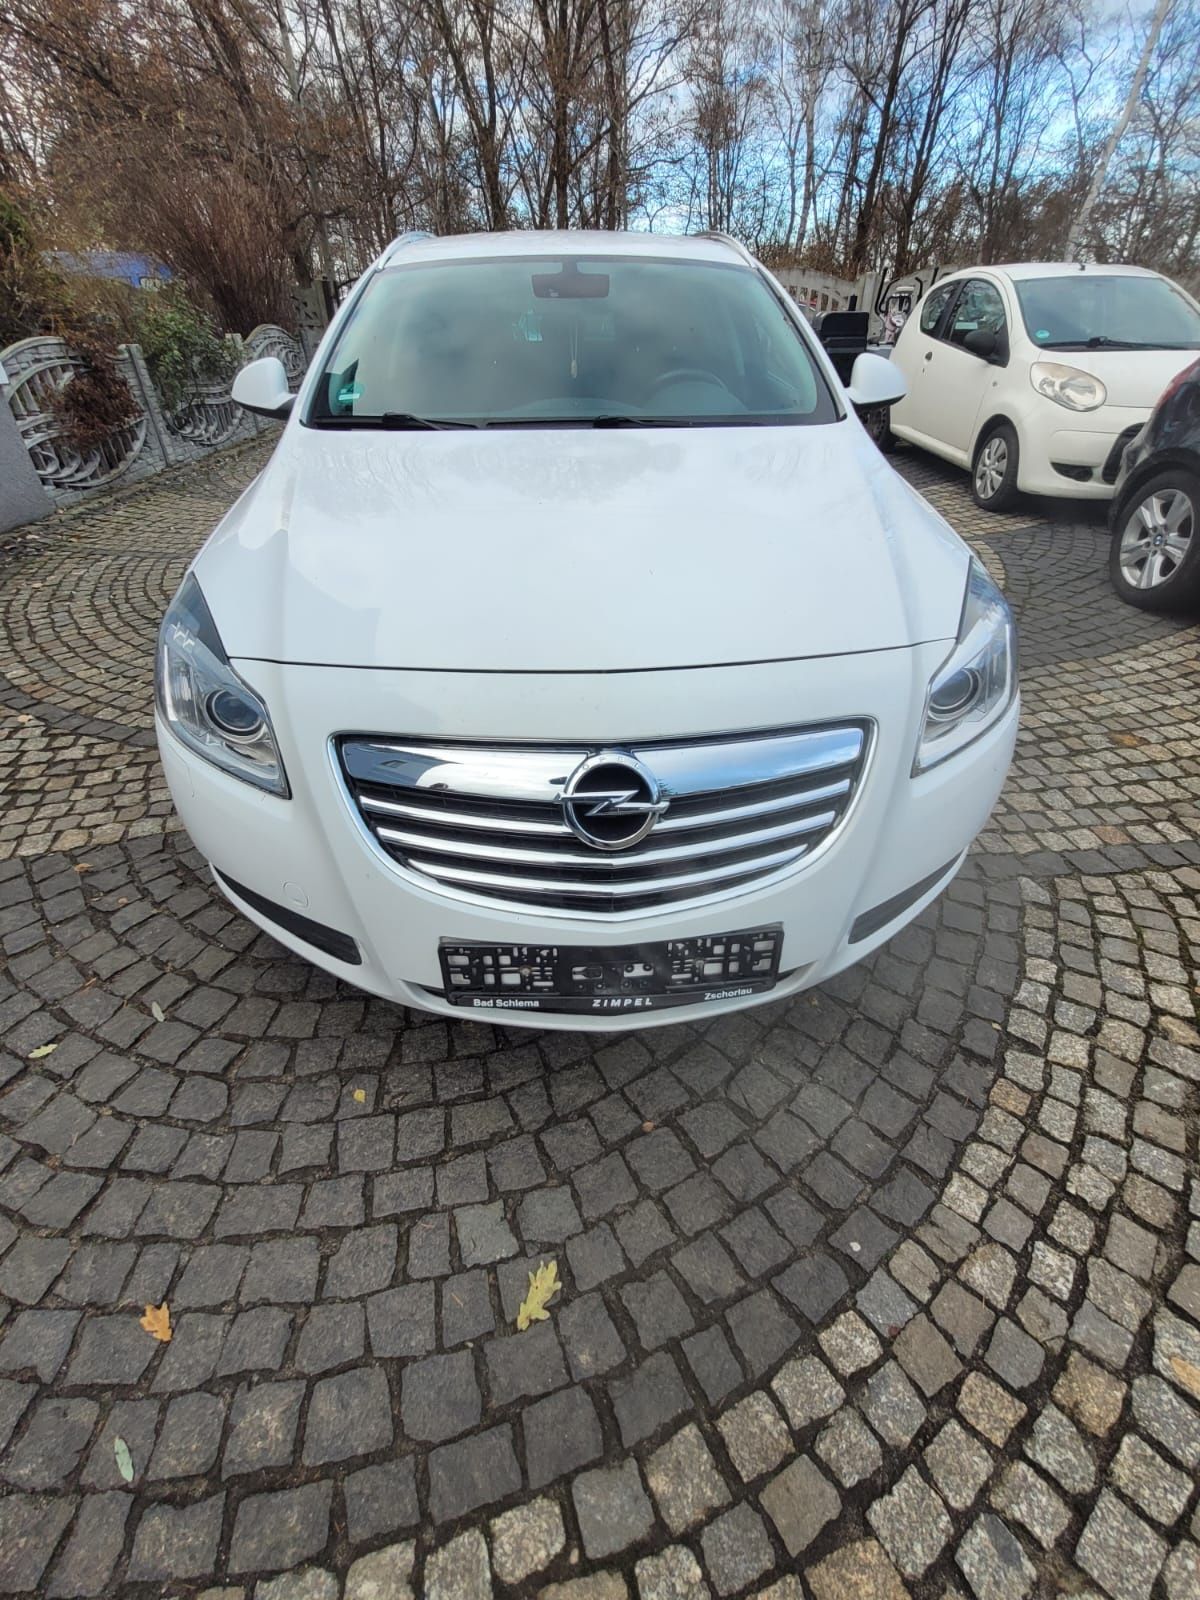 Opel Insignia 2.0 CDTI , 2009r. , BI-Xenon , 160KM